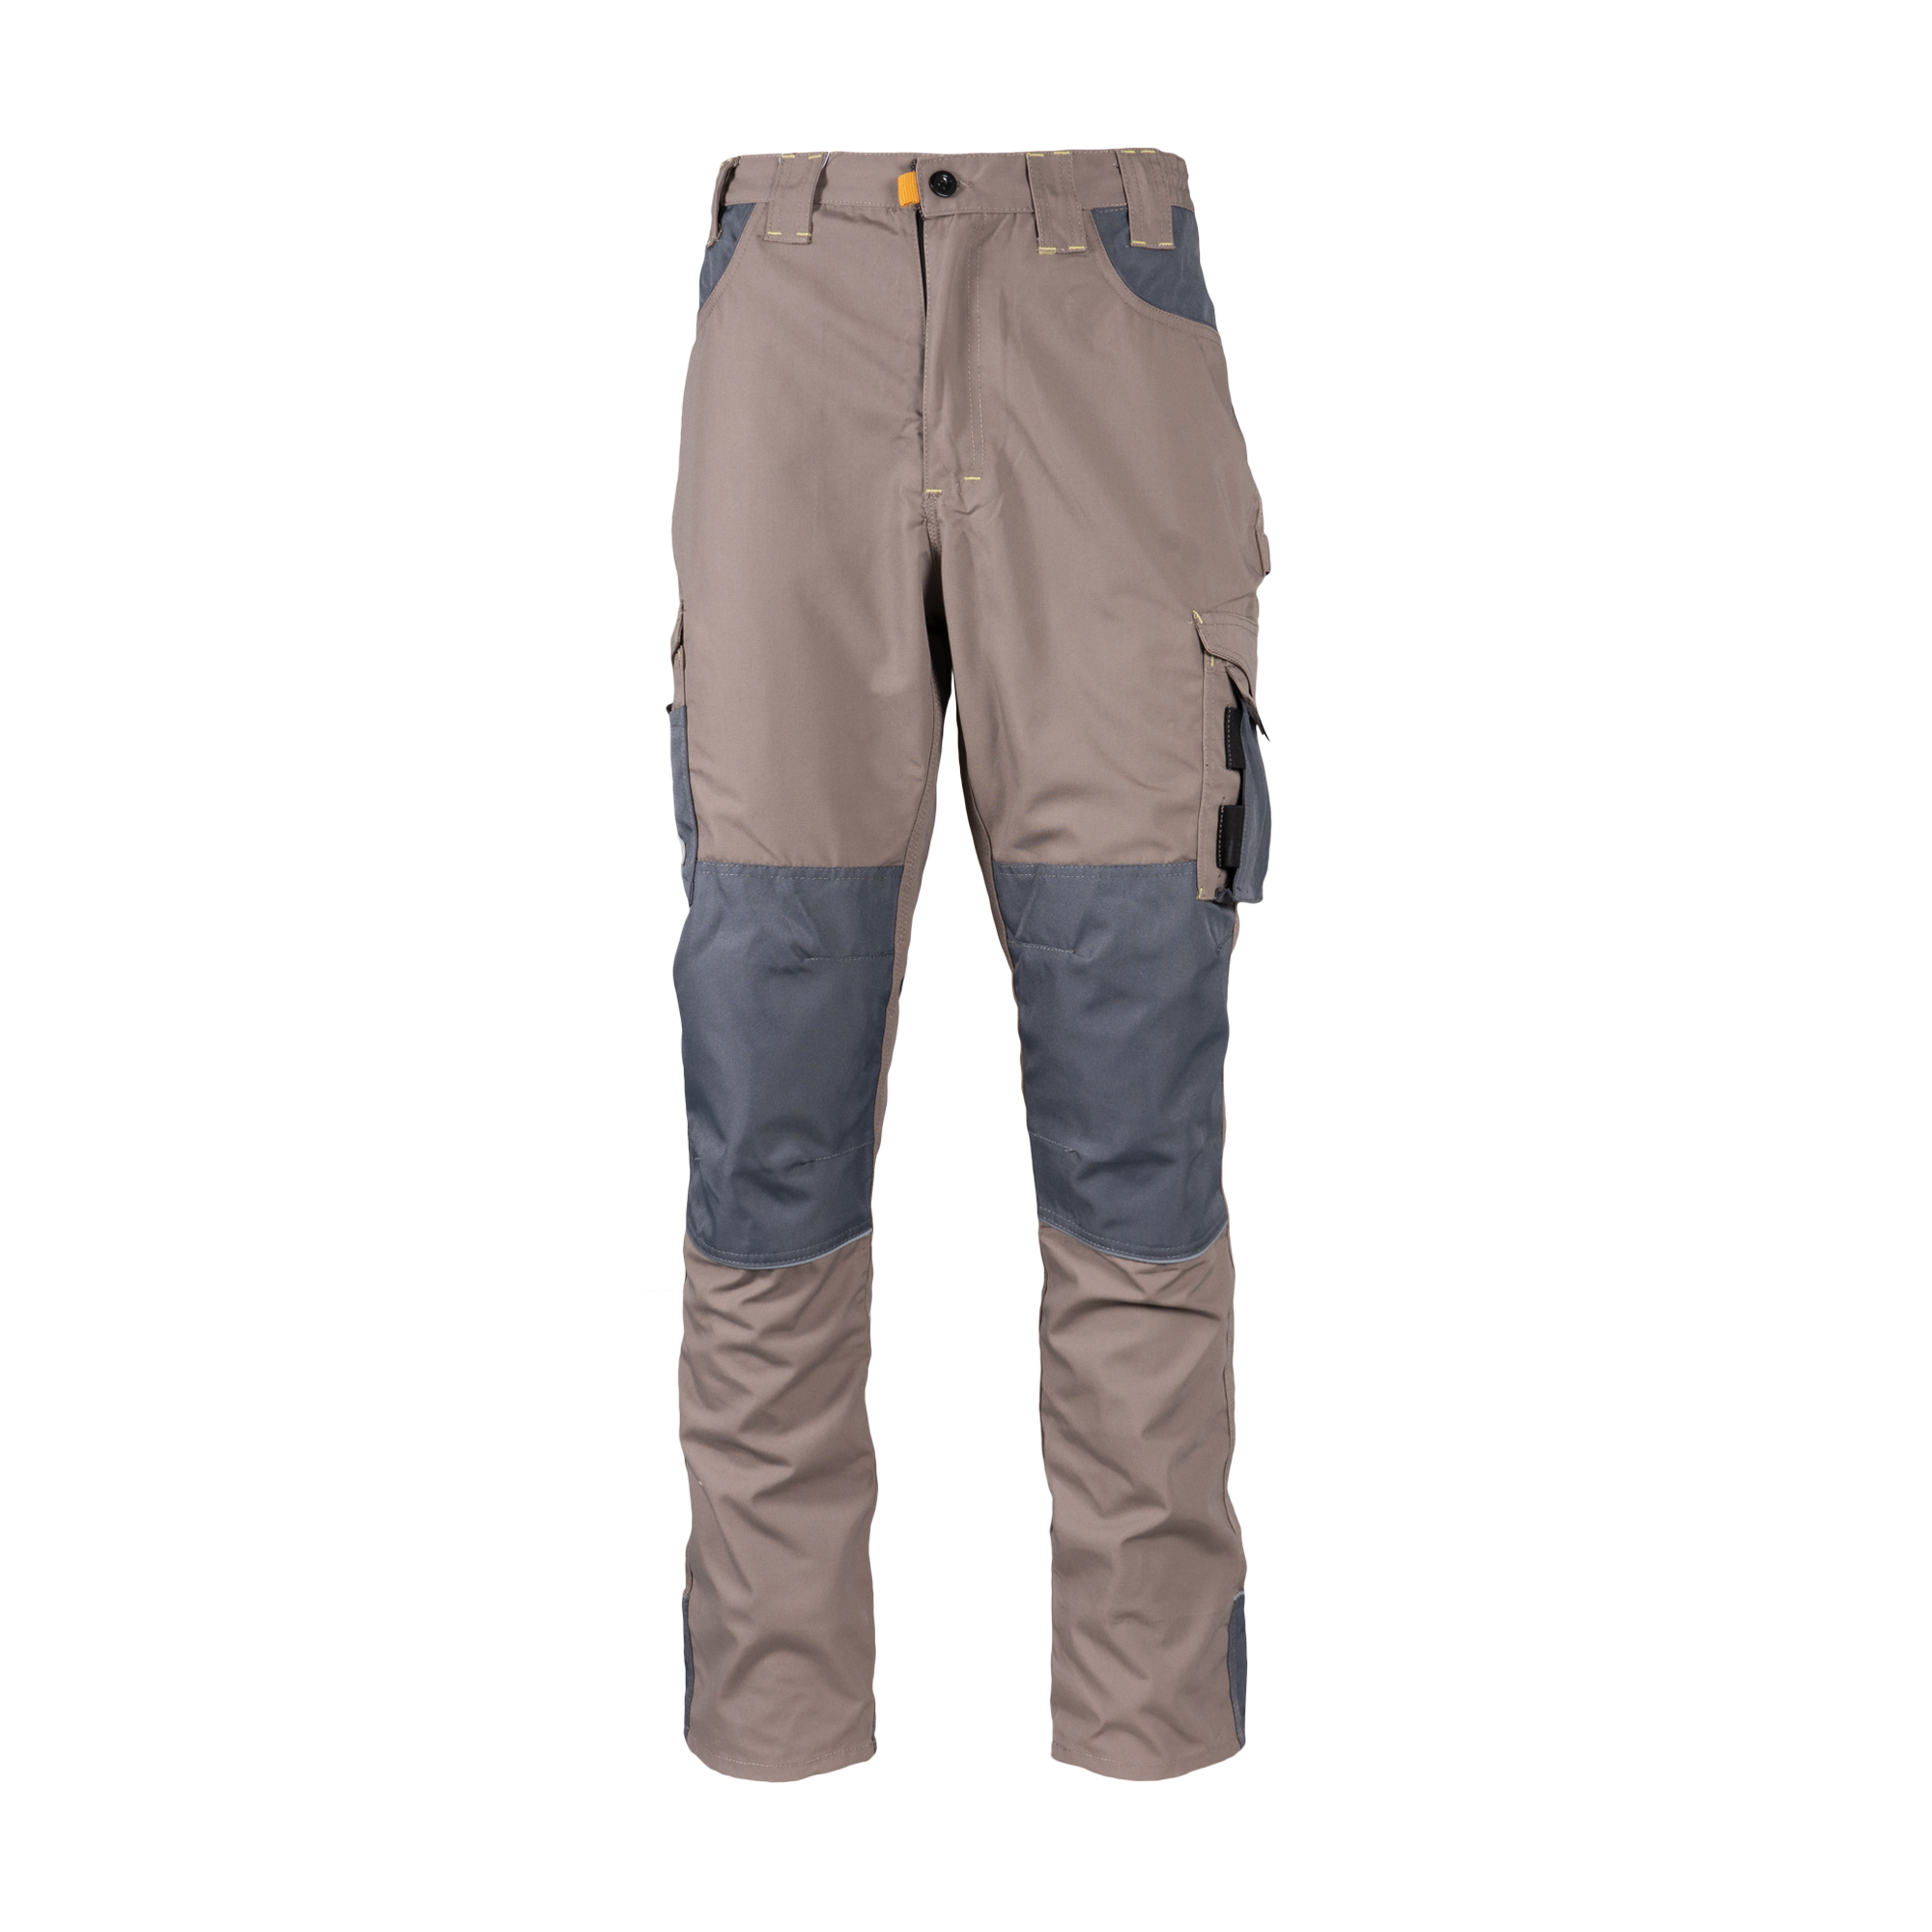 Rebel Men's Tech Gear Trousers Desert Dust - Protekta Safety Gear